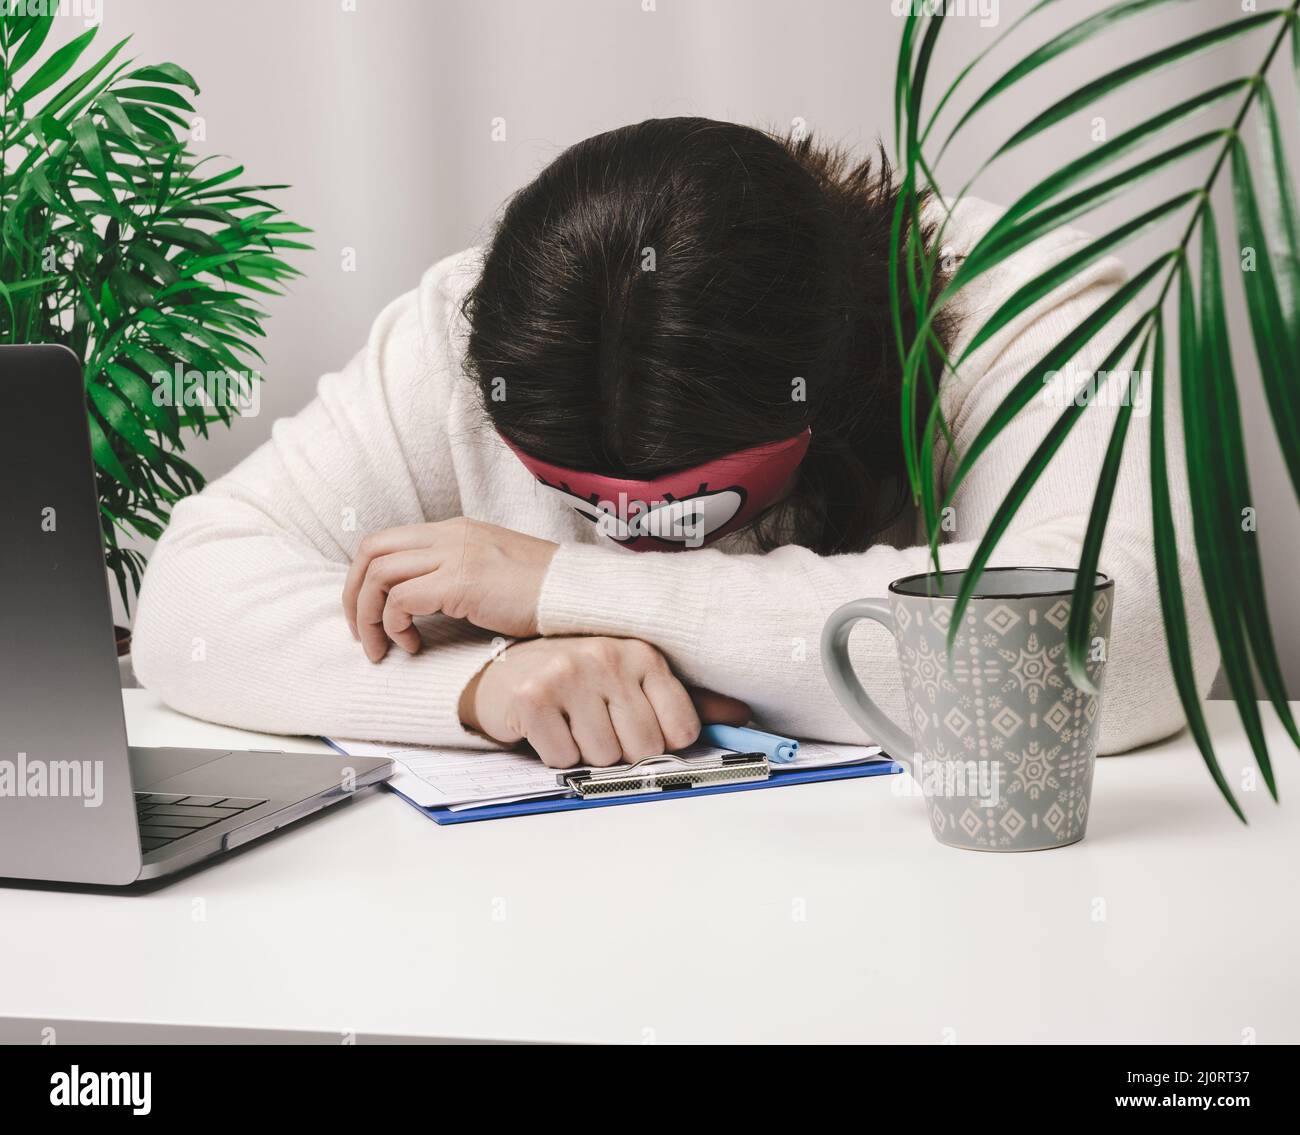 Una mujer en un suéter duerme en una mesa de trabajo, al lado de un ordenador portátil. Concepto de fatiga y exceso de trabajo. Pereza Foto de stock